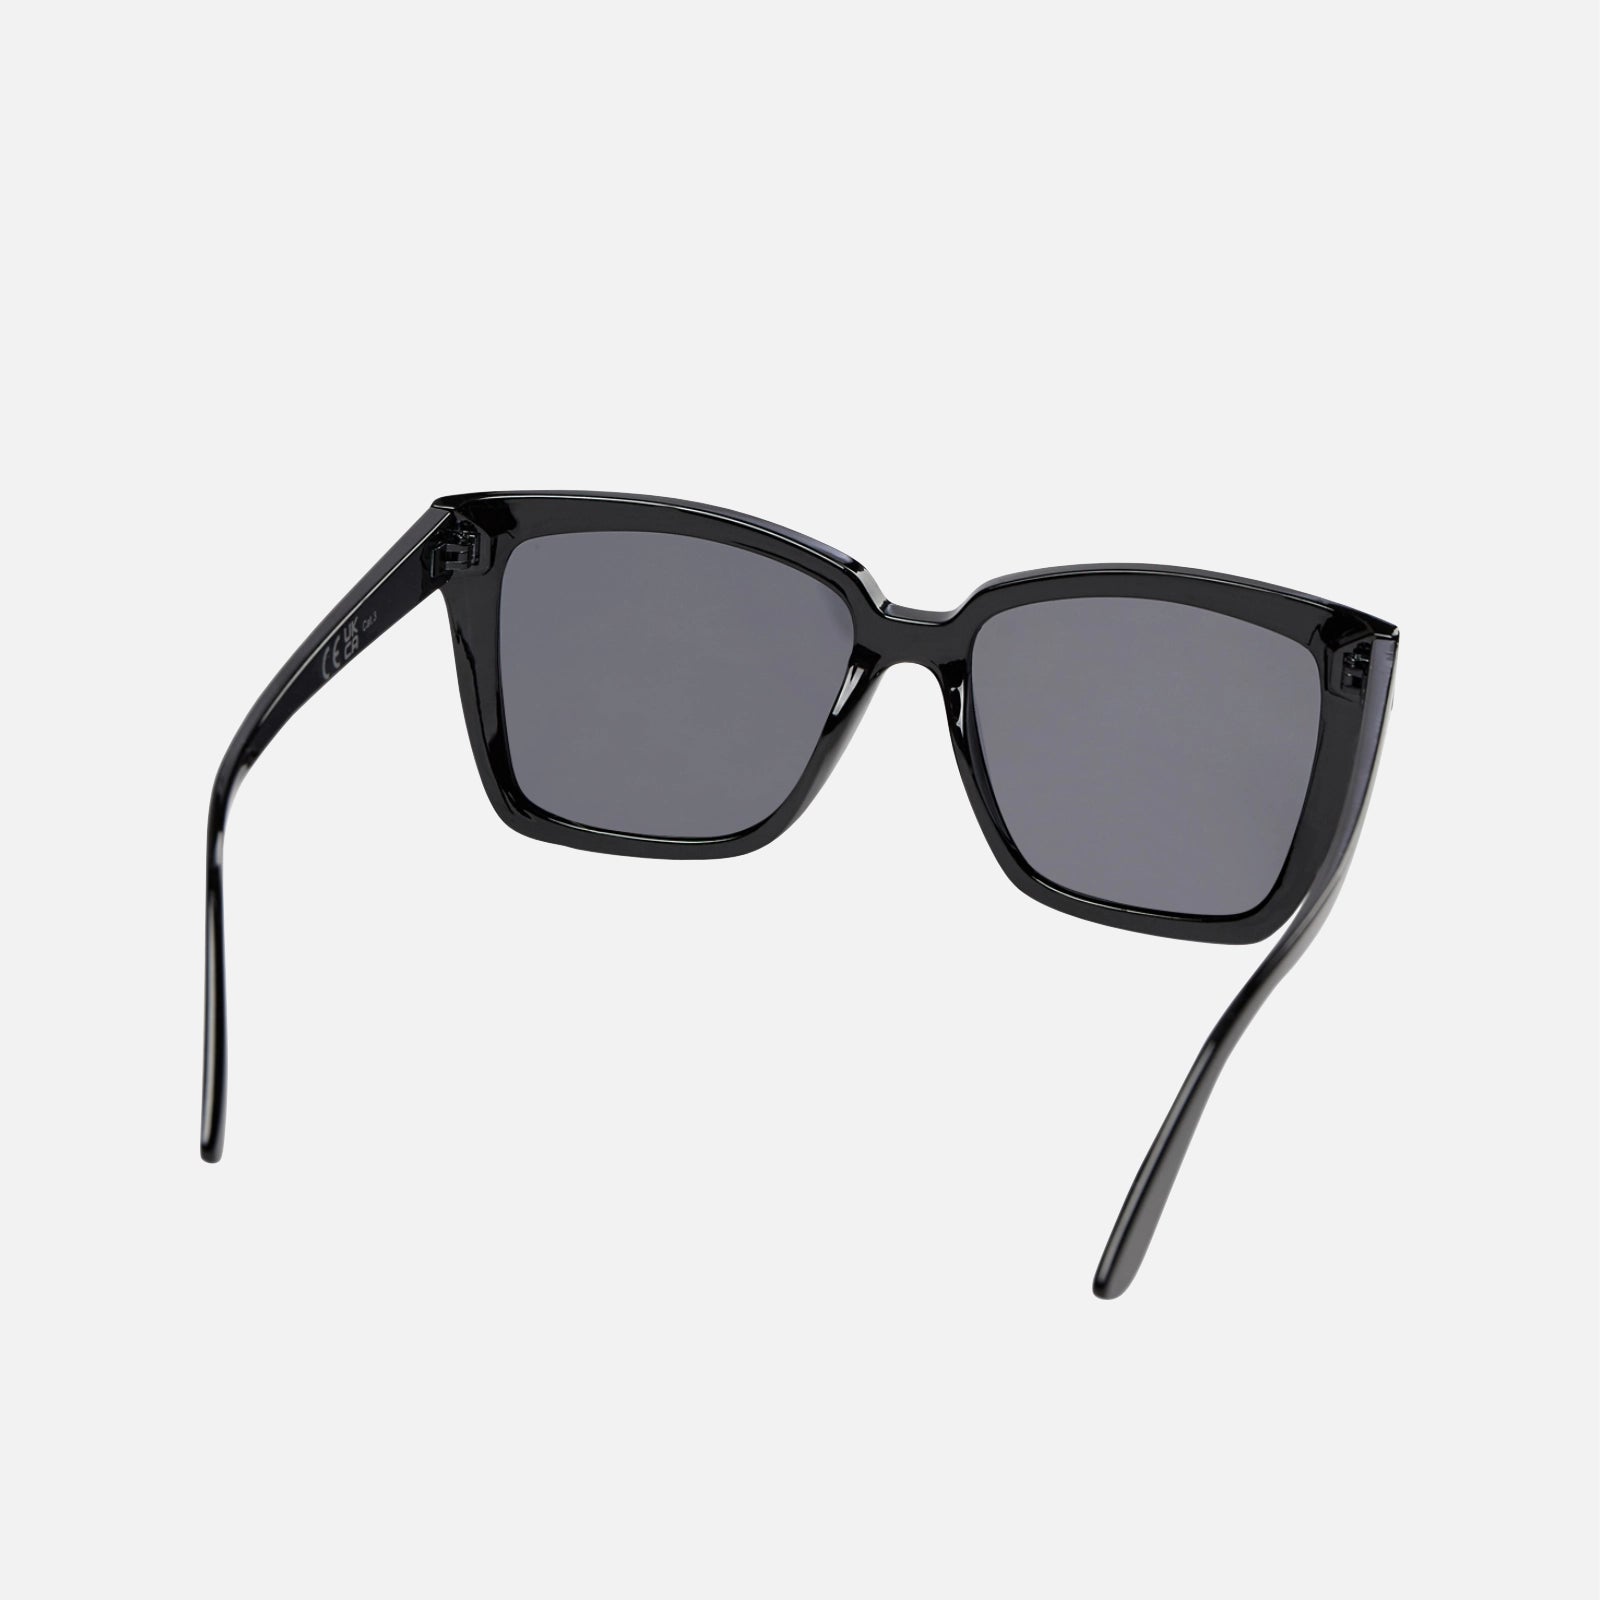 Nuolive solbriller I sort fra Nümph (bagside)